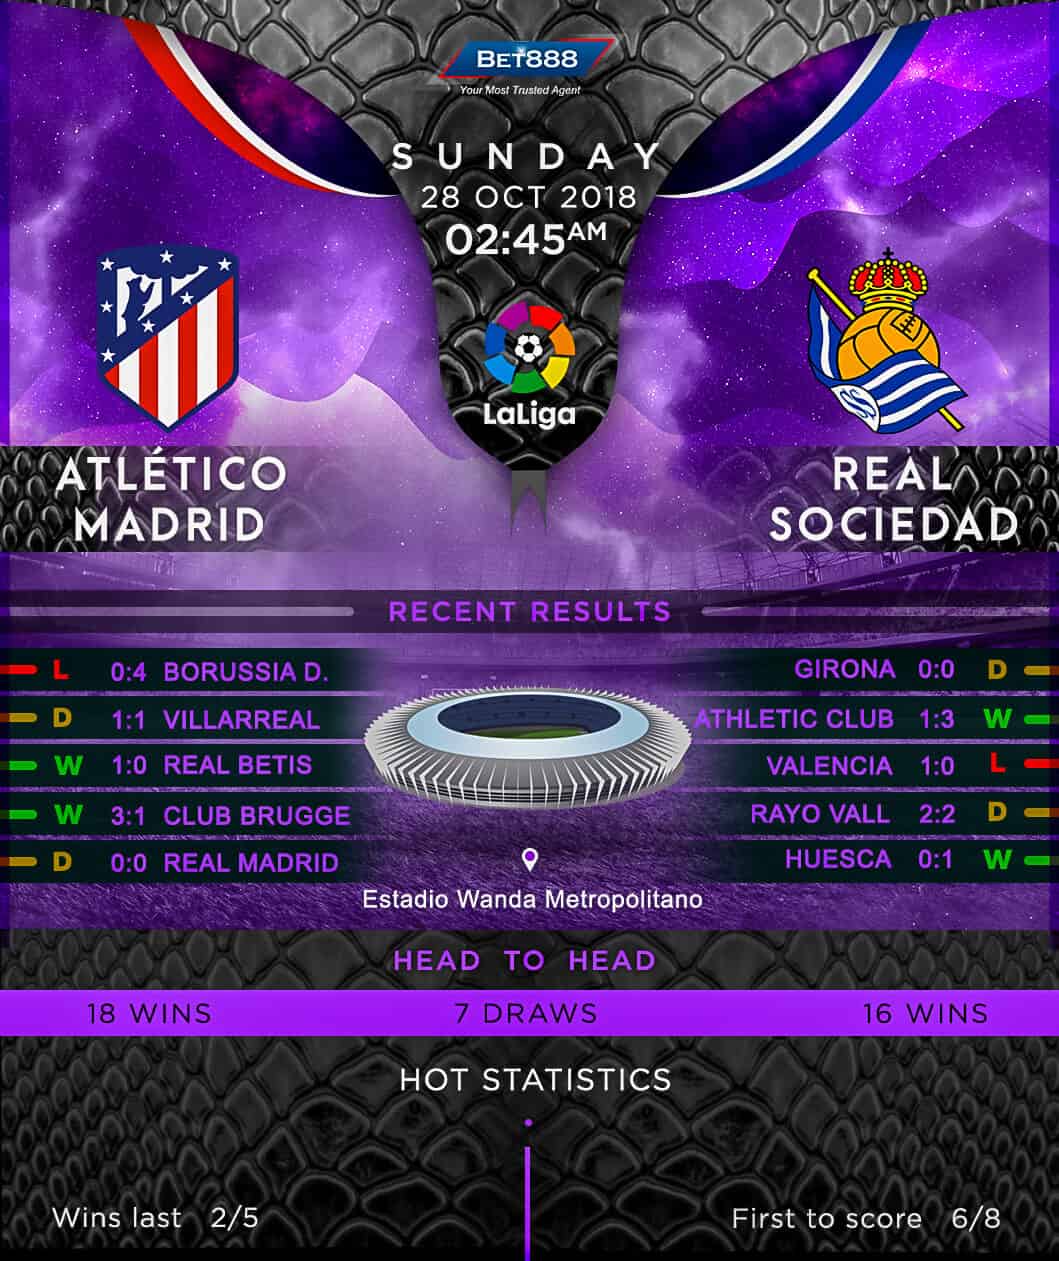 Atletico Madrid vs Real Sociedad 28/10/18